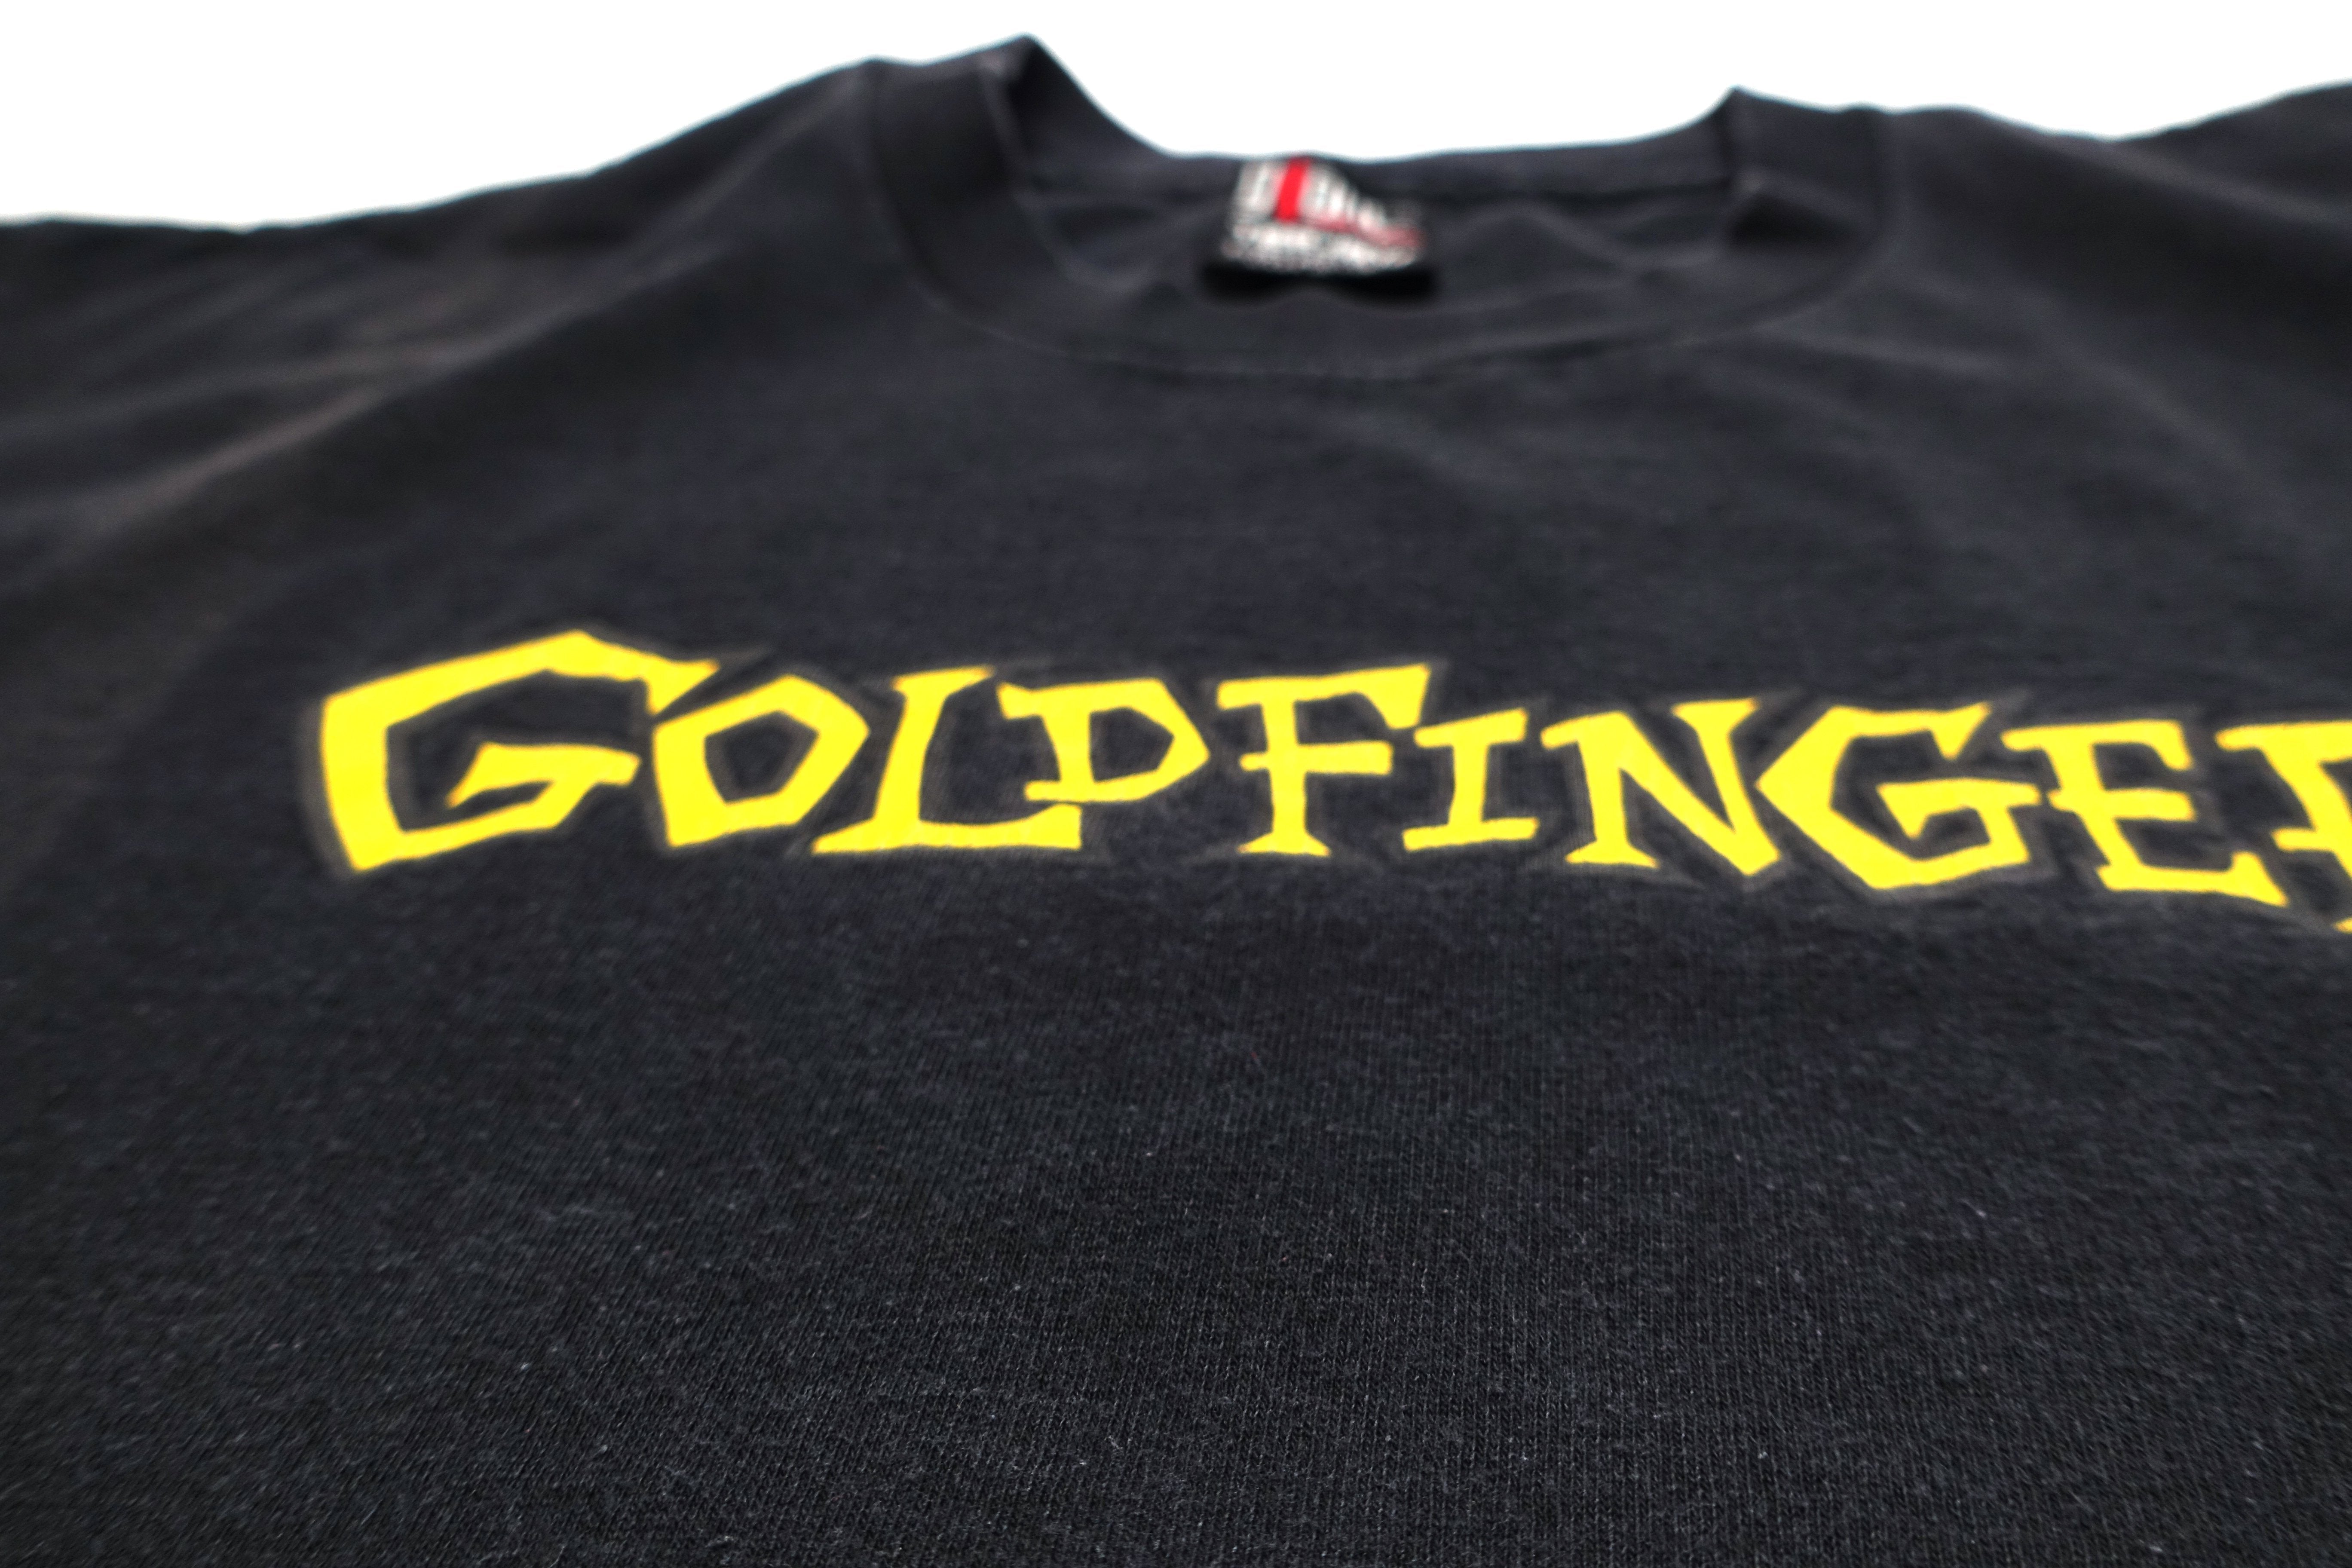 Goldfinger - S/T 1996 Tour Shirt (Black) Size XL